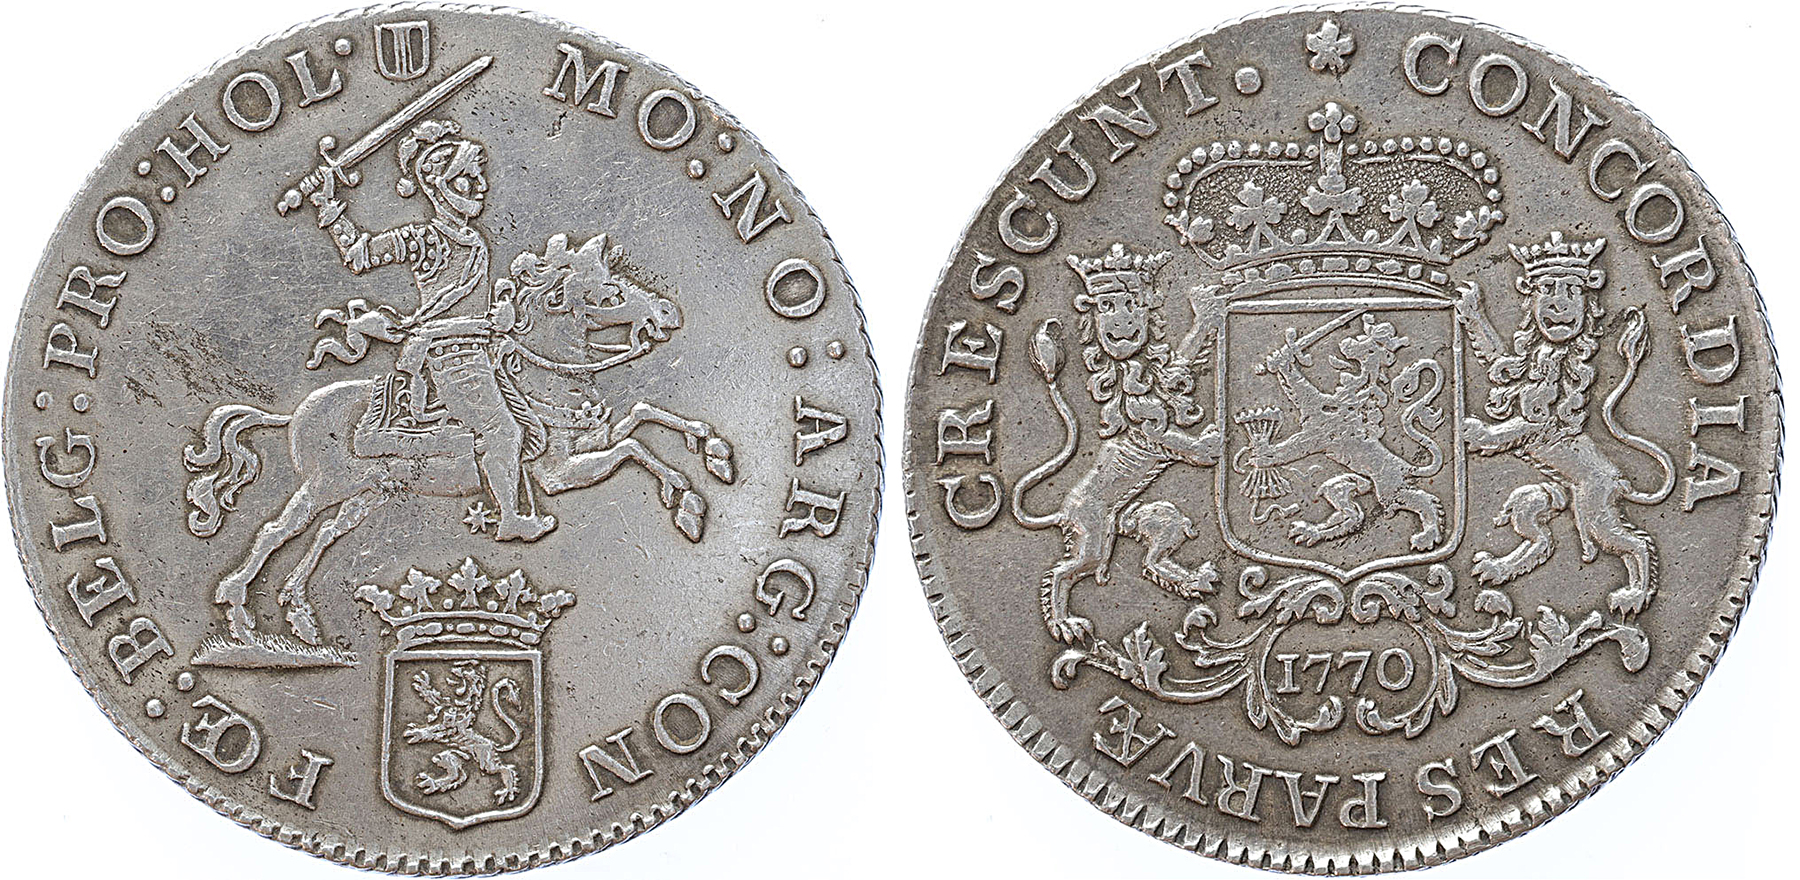 Holland Halve zilveren rijder 1770